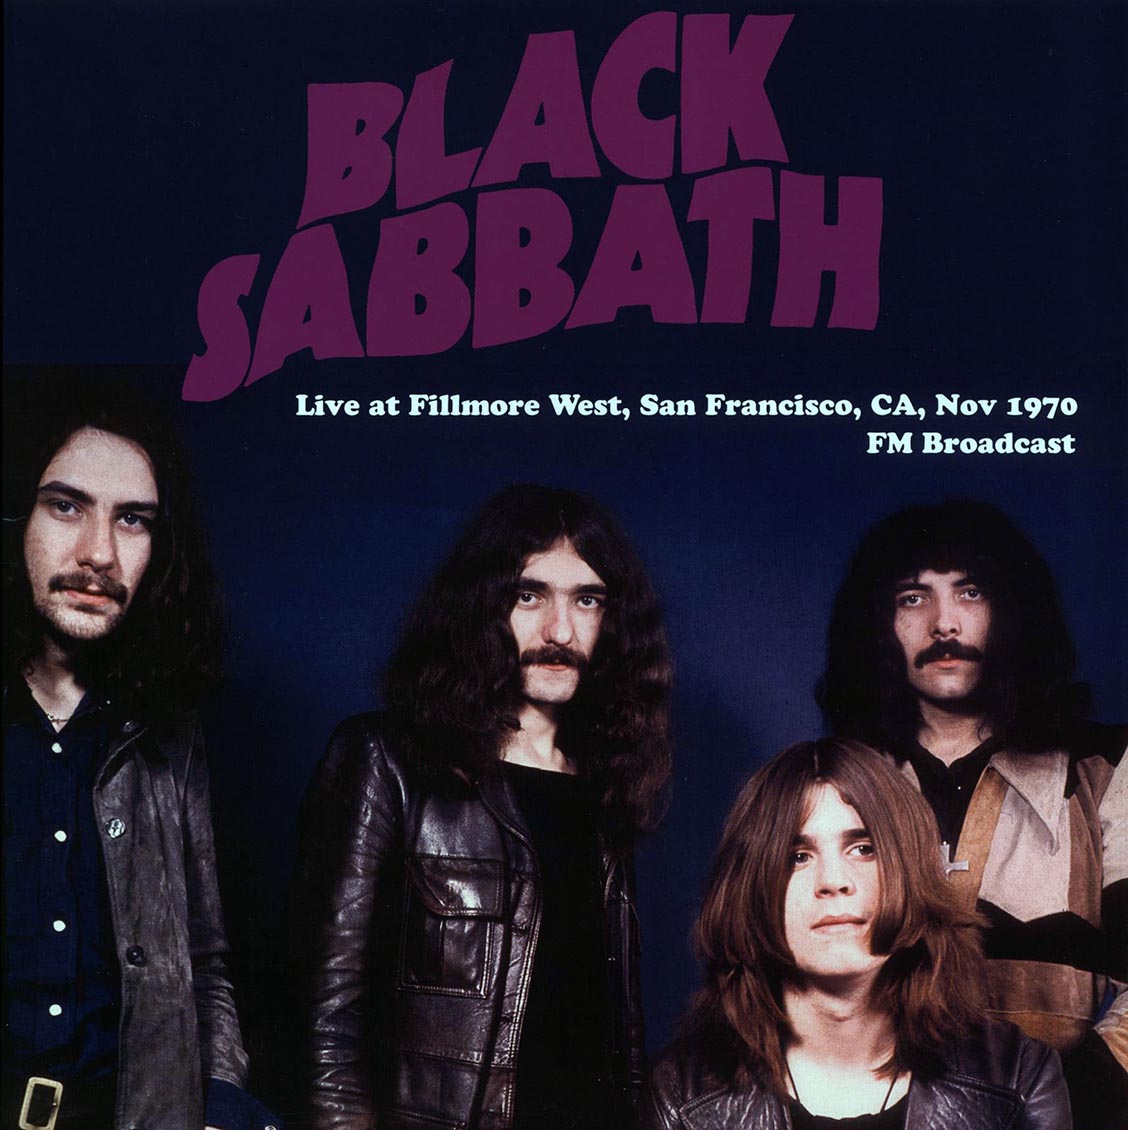 Black Sabbath - Live At Fillmore West, San Francisco, CA, Nov 1970 FM Broadcast (ltd. 500 copies made) (magenta vinyl) - Vinyl LP